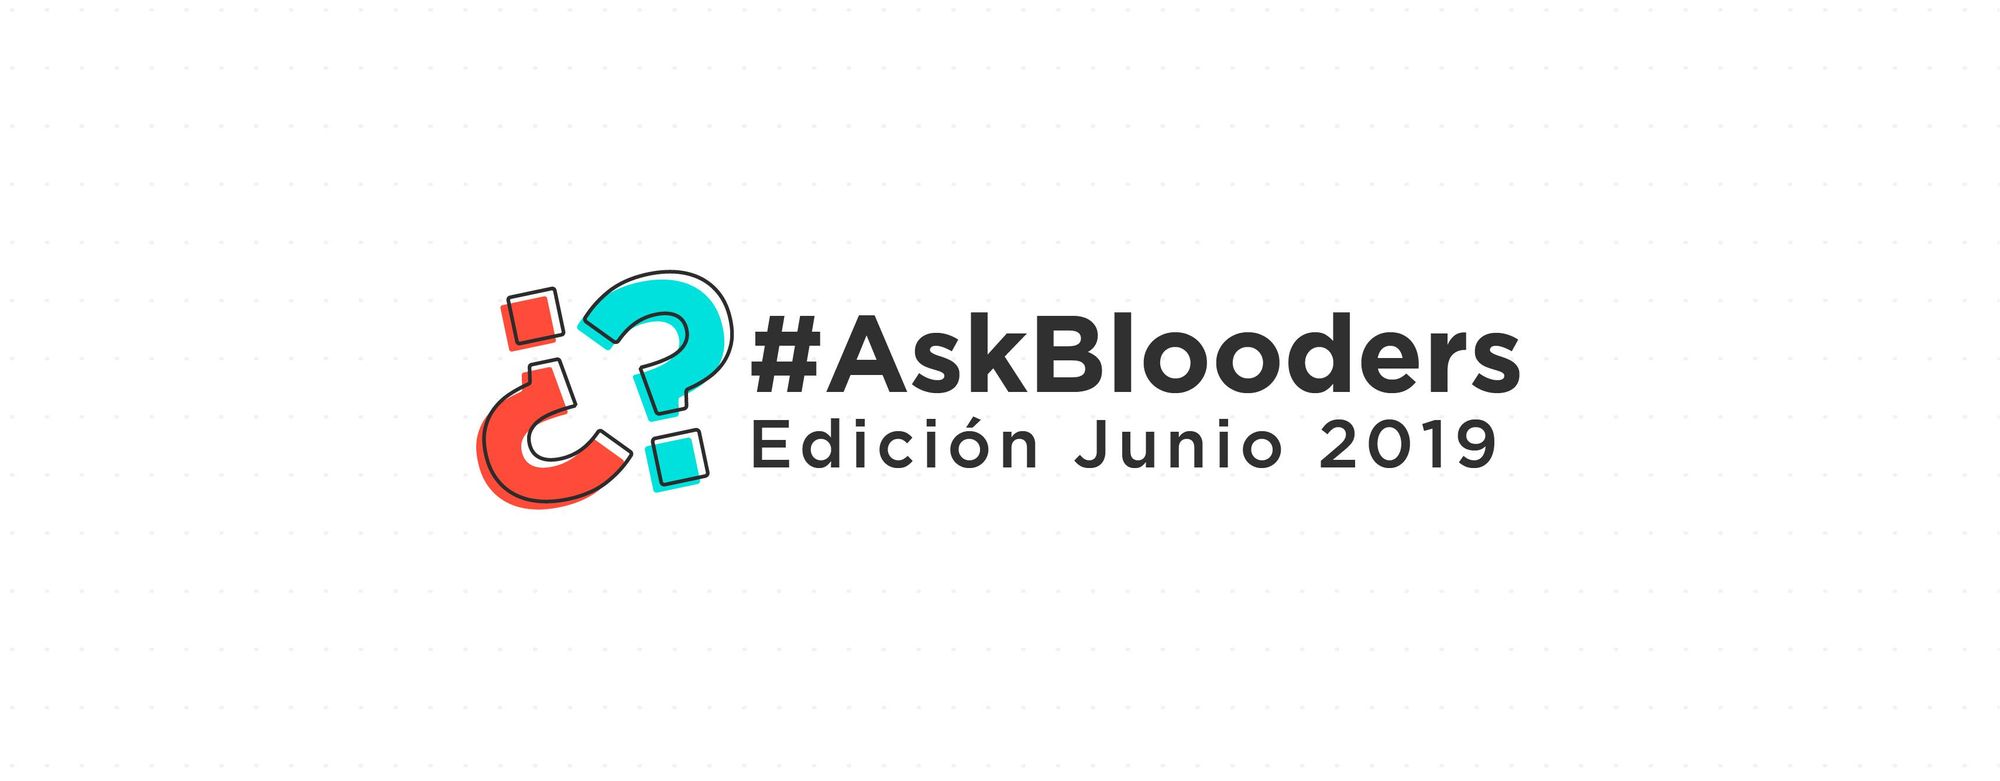 #AskBlooders edición Junio 2019